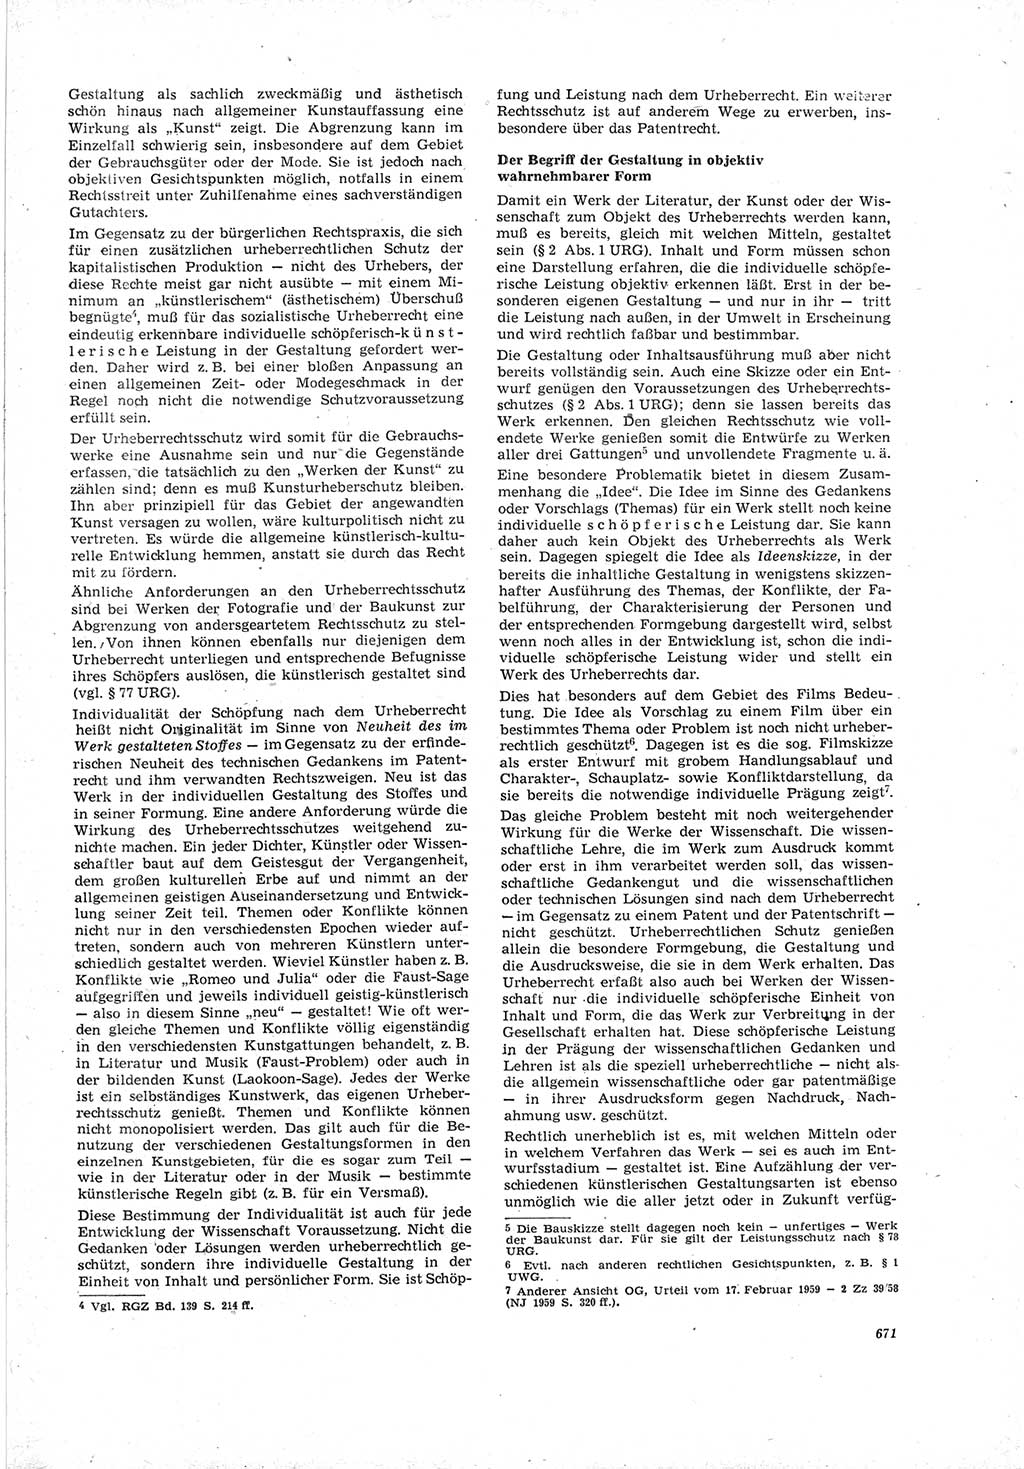 Neue Justiz (NJ), Zeitschrift für Recht und Rechtswissenschaft [Deutsche Demokratische Republik (DDR)], 19. Jahrgang 1965, Seite 671 (NJ DDR 1965, S. 671)